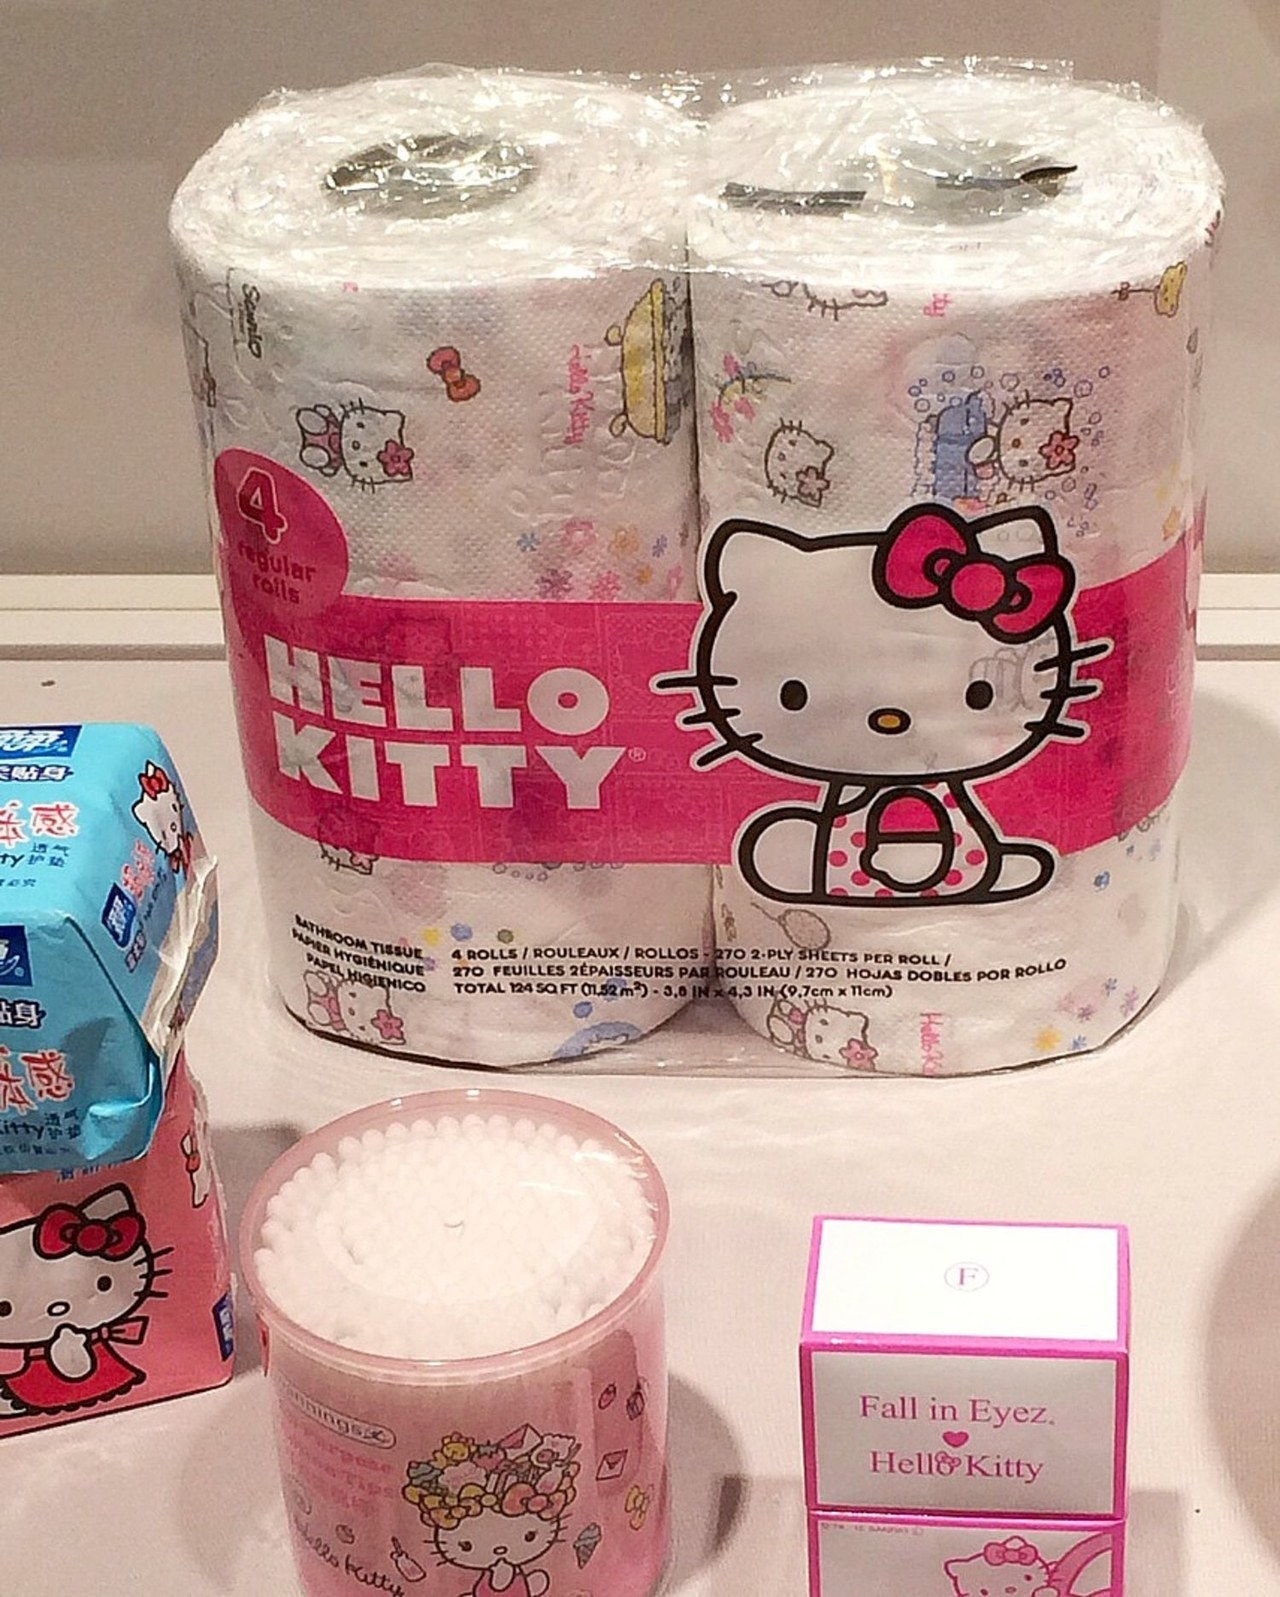 Hallo kitty toilet paper